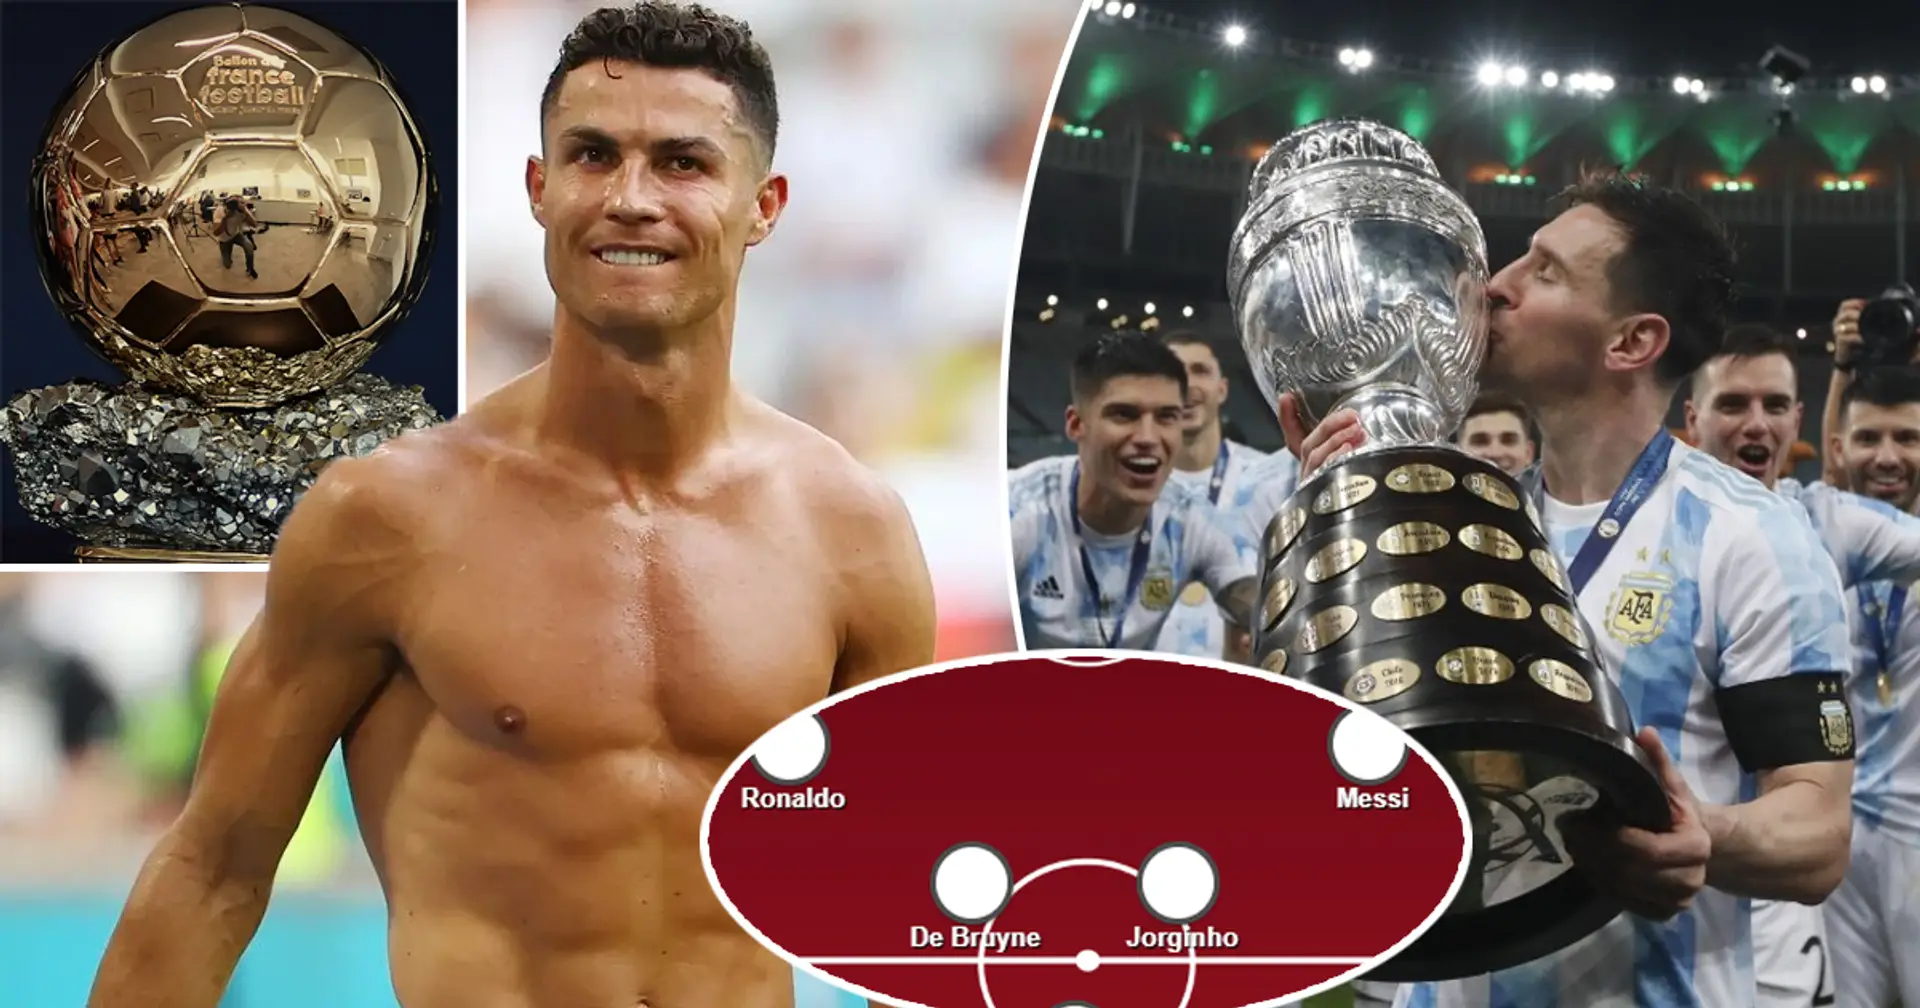 Ronaldo-Messi ensemble, un autre ancien joueur de Madrid inclus: Si les prétendants actuels au Ballon d'Or 2021 étaient dans la même équipe